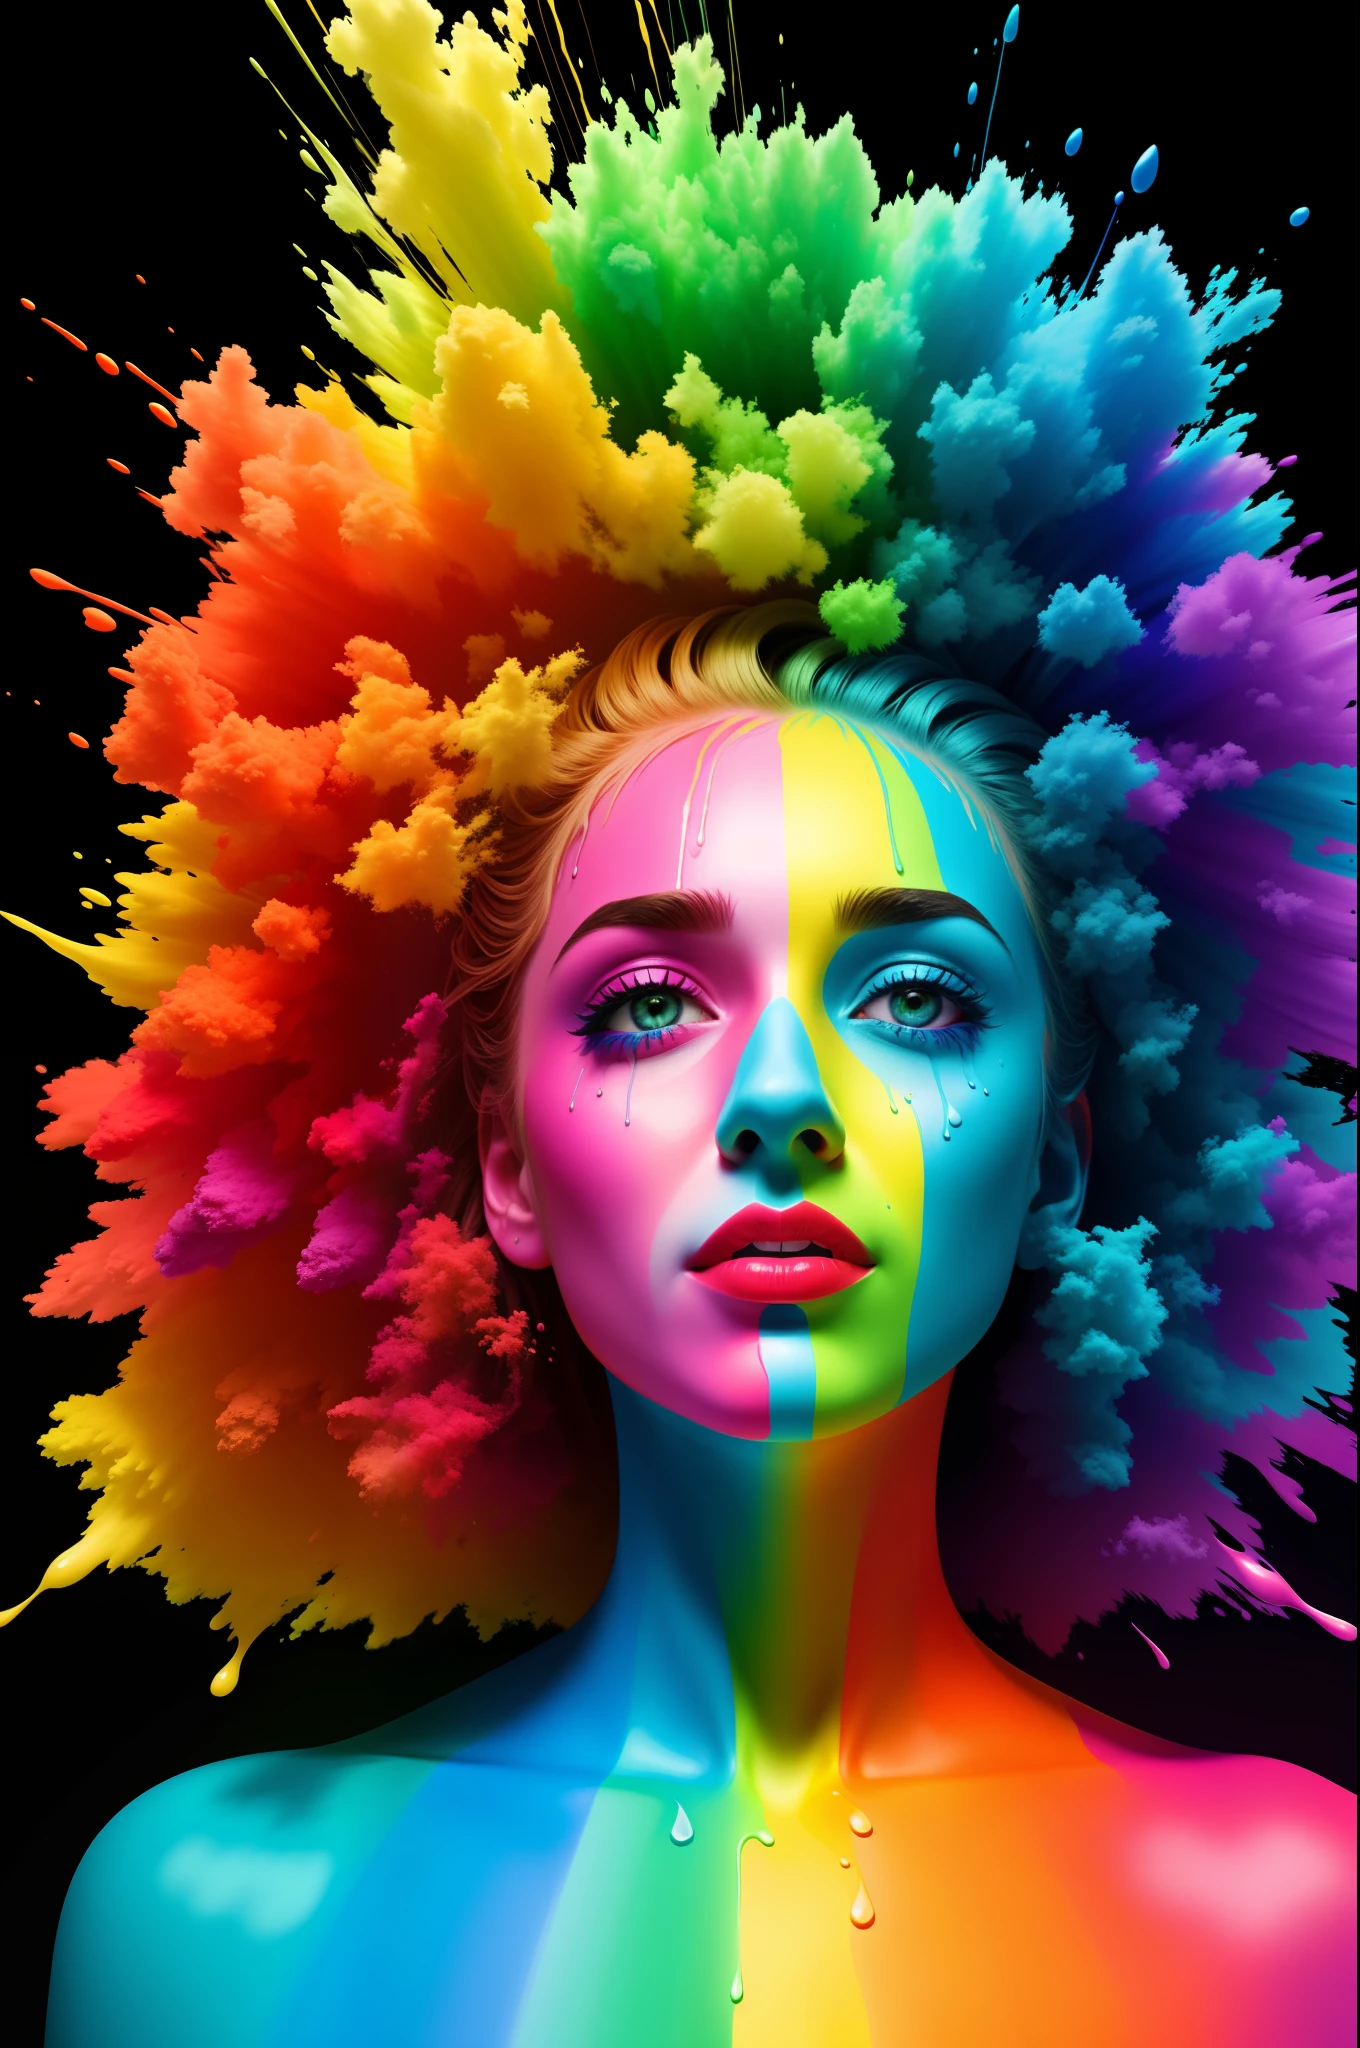 "私は一生を有色人種として過ごすつもりはない" さまざまな色の虹の絵の具で塗られた, 超リアル写真, 滴下テクニック, 不和 pfp, 10ビットカラー, 高解像度, 8k